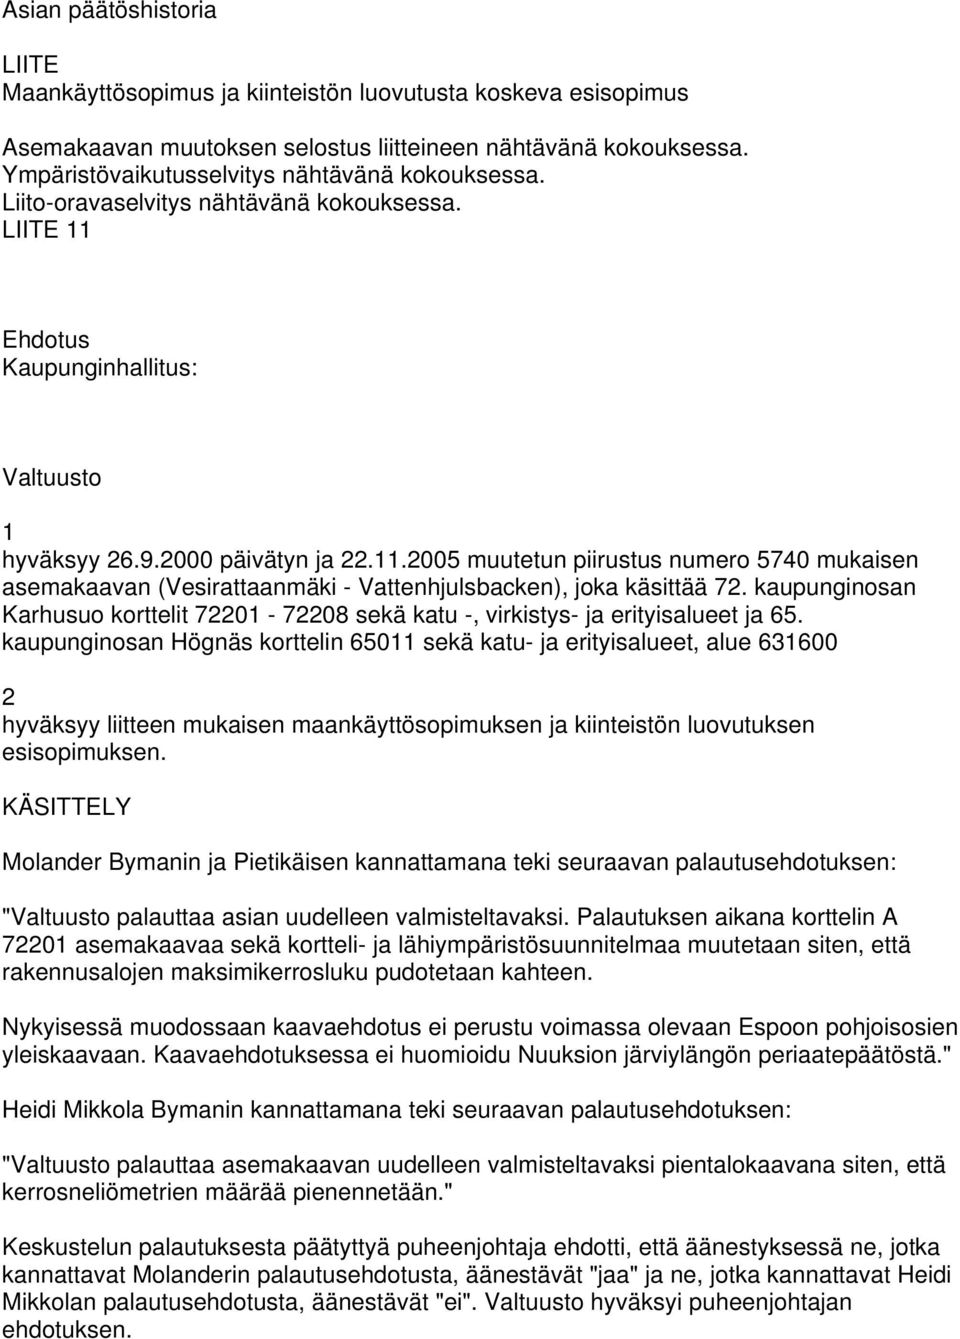 Ehdotus Kaupunginhallitus: Valtuusto 1 hyväksyy 26.9.2000 päivätyn ja 22.11.2005 muutetun piirustus numero 5740 mukaisen asemakaavan (Vesirattaanmäki - Vattenhjulsbacken), joka käsittää 72.